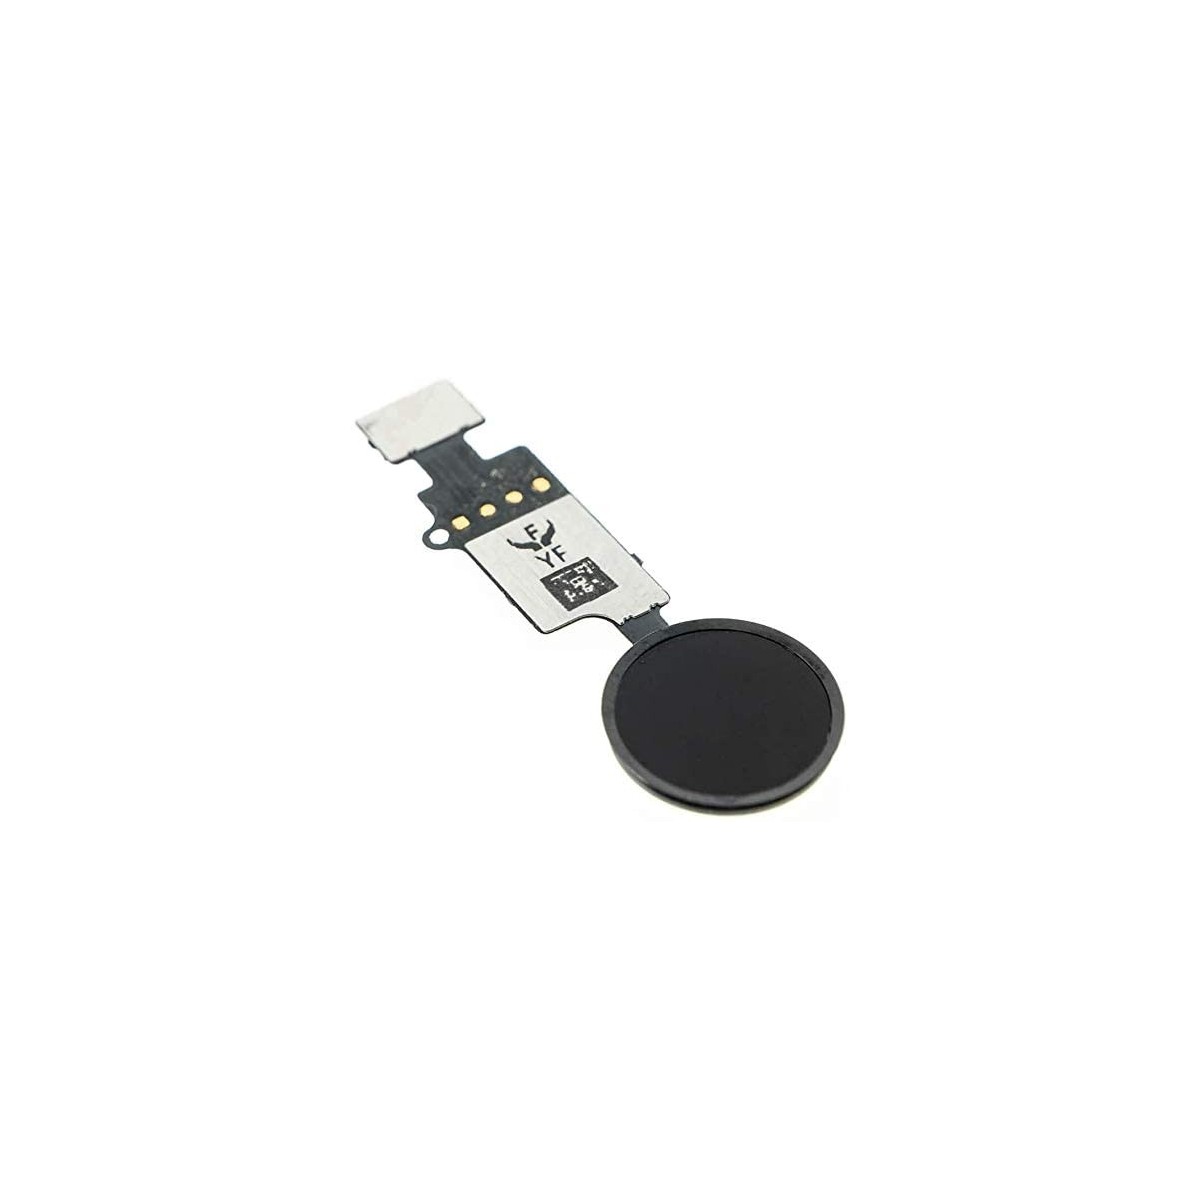 Bouton Home fonctionnel avec Nappe Flex Compatible avec iPhone 7 Plus Noir Home Button de Rechange